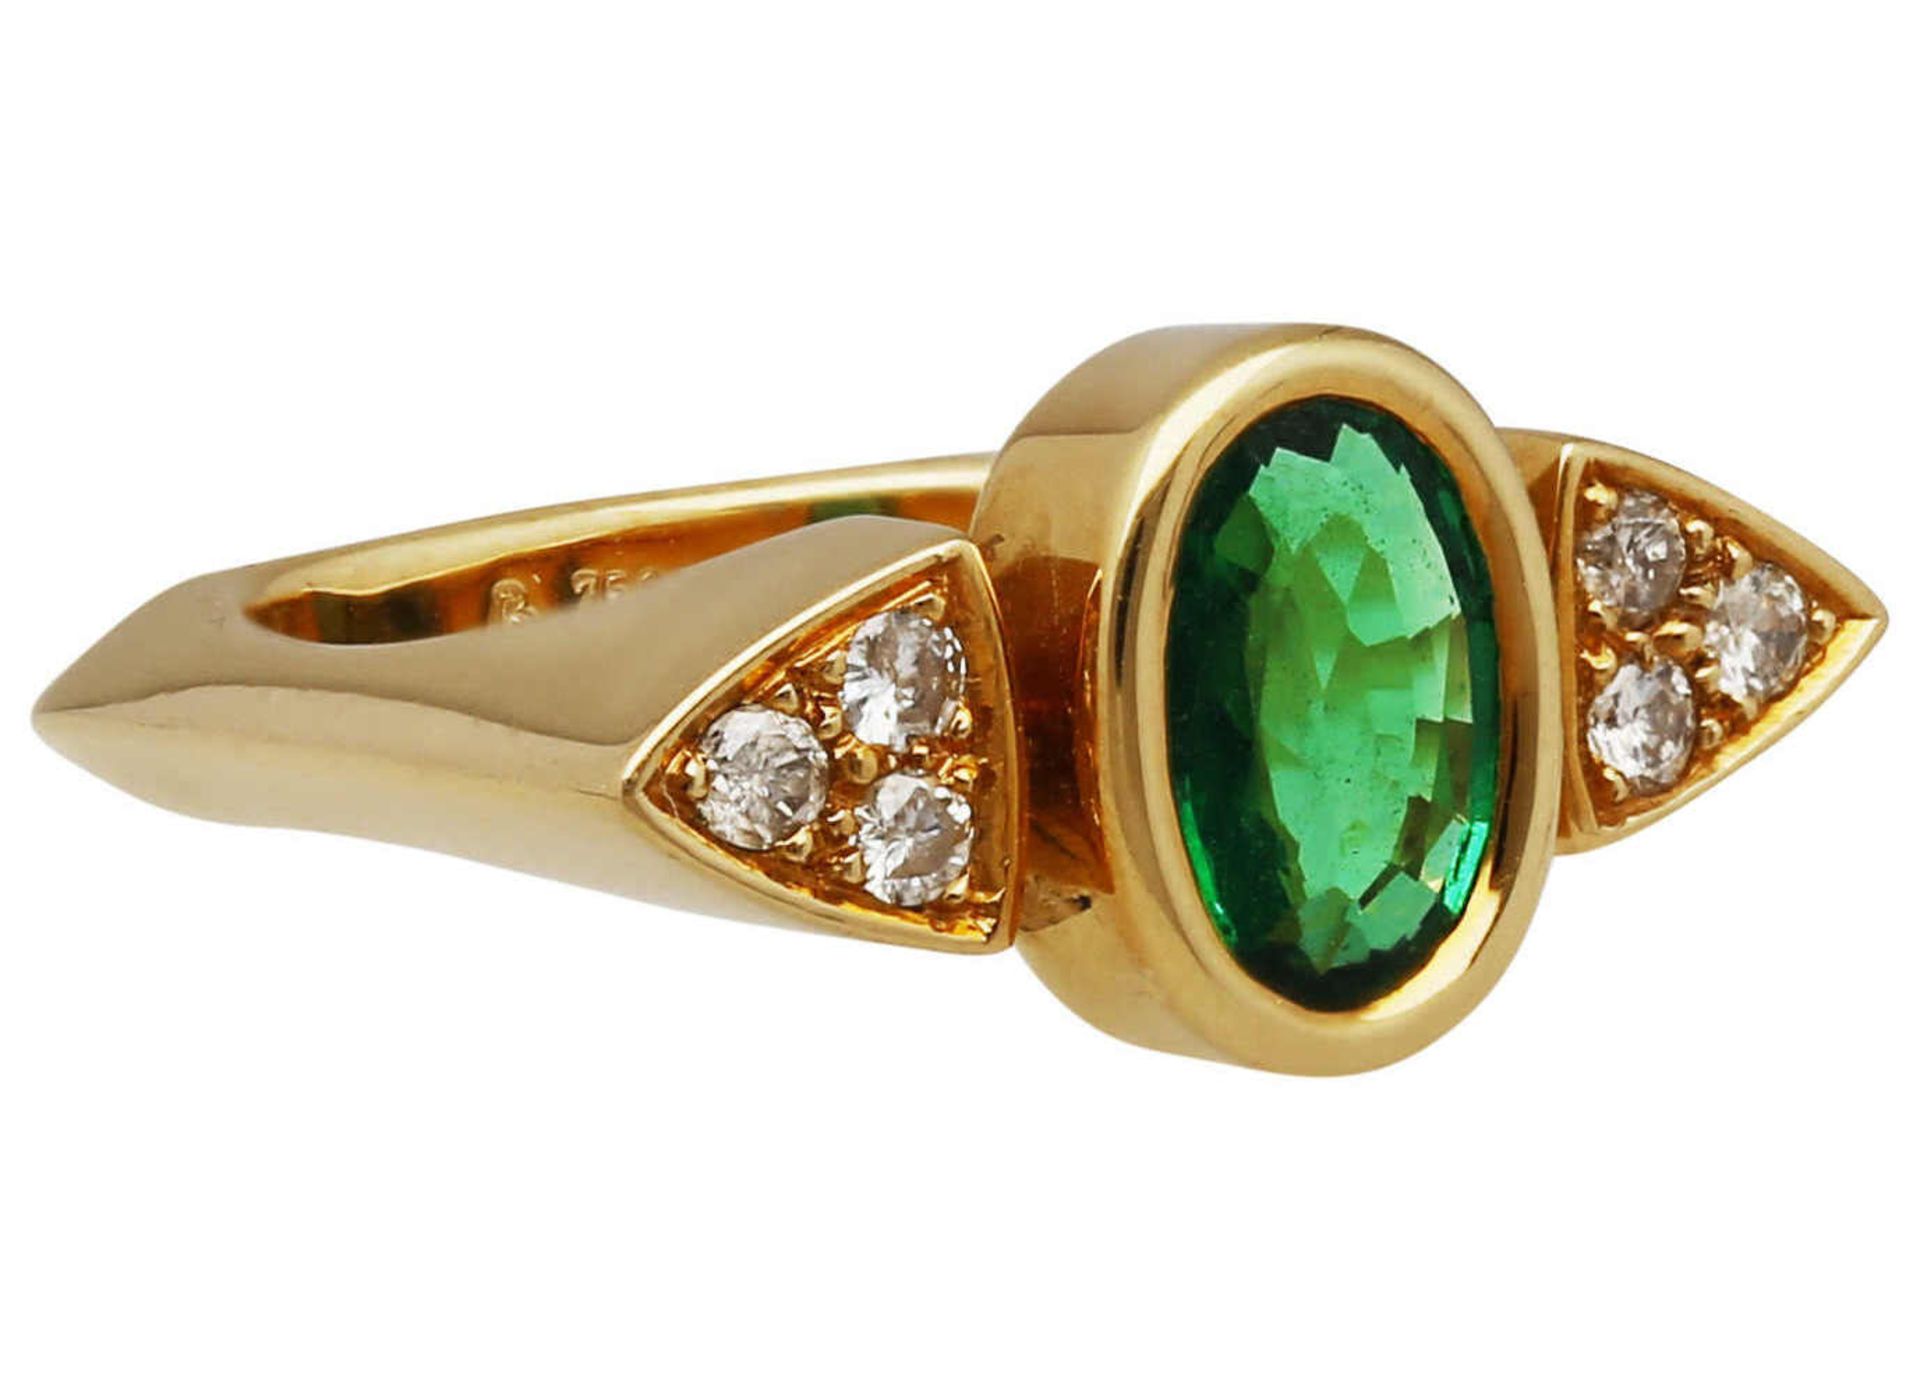 Smaragd-Brillant-Ring Tolles Design in Gelbgold 18K, zentral ein Smaragd oval von ca. 1 ct in sehr - Bild 2 aus 2